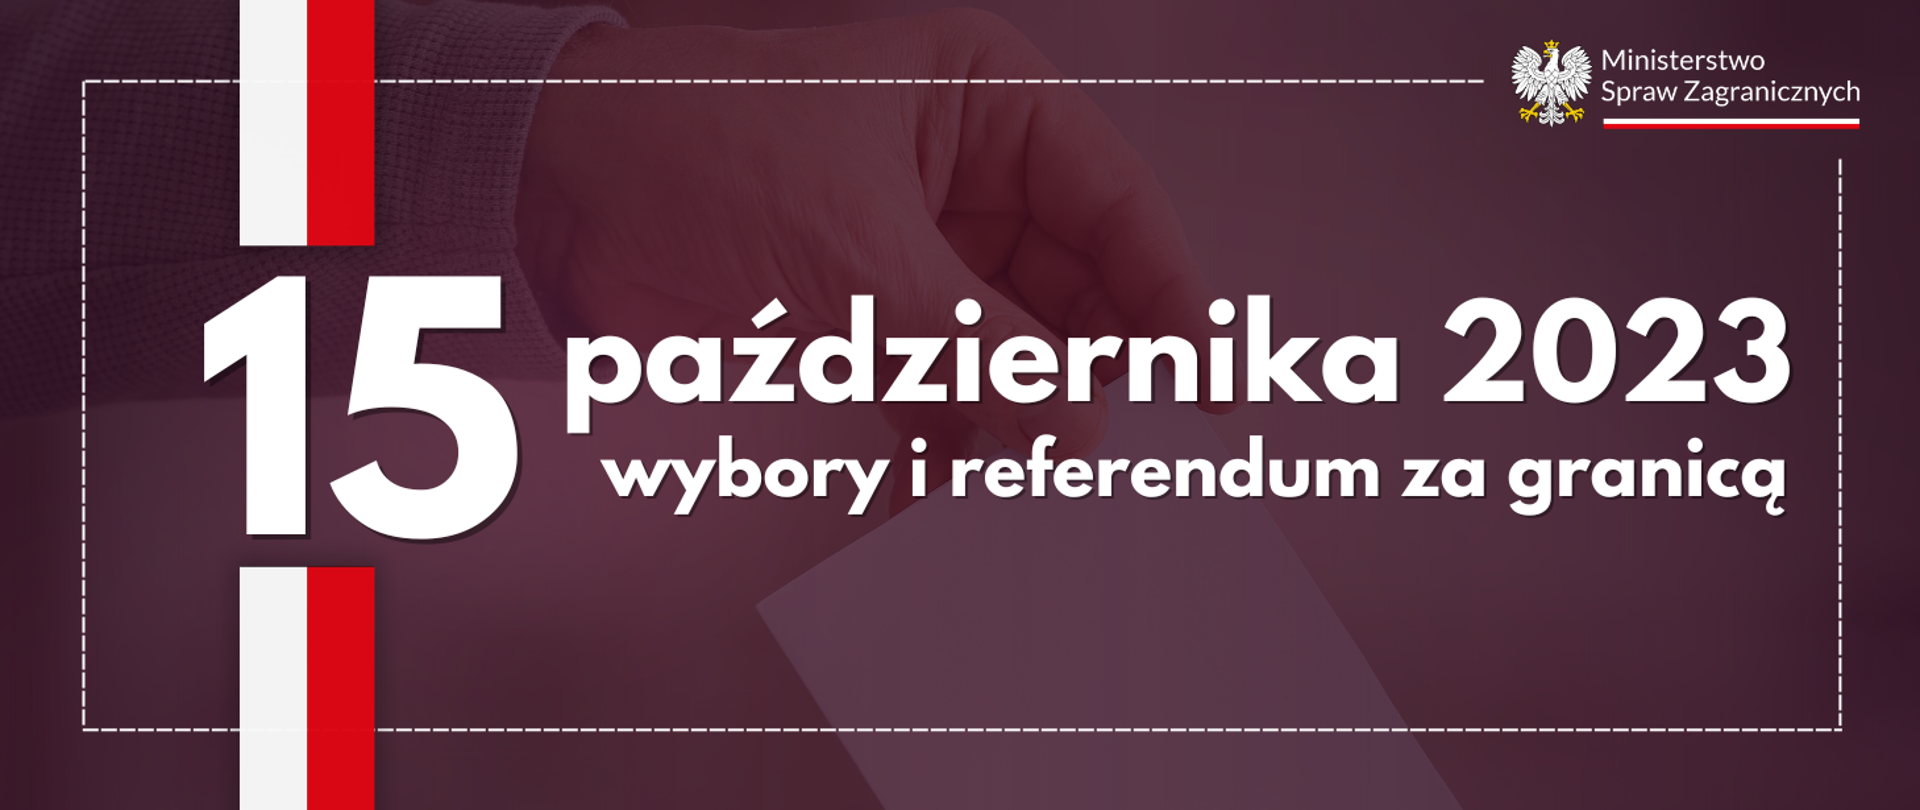 Wybory i referendum za granicą 15 października 2023